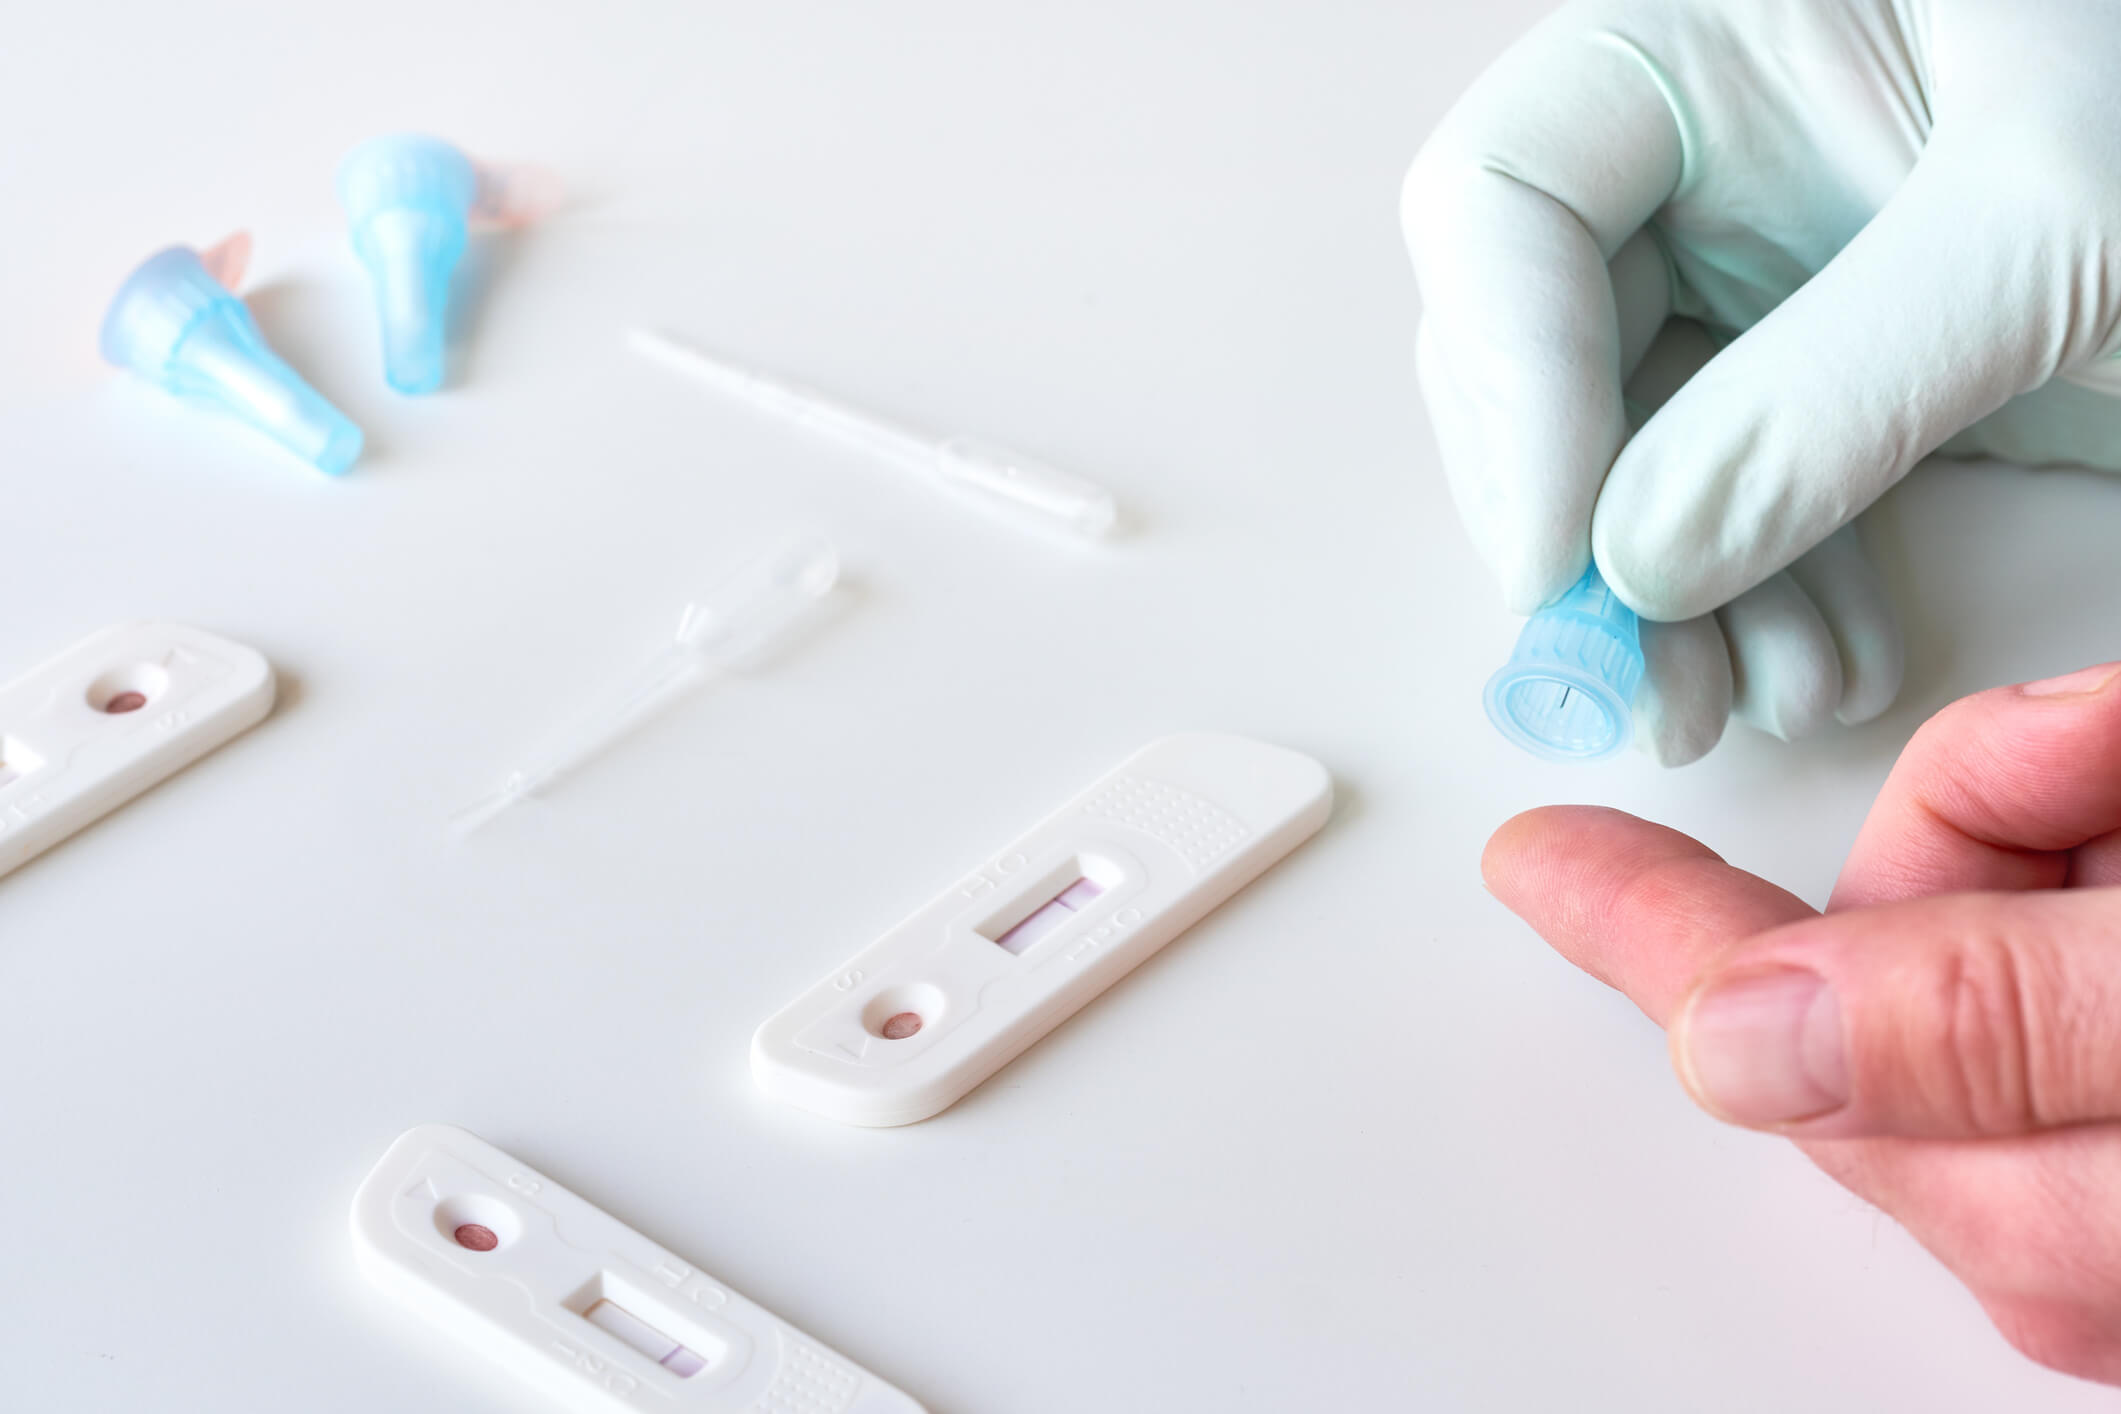 Fiabilité test covid : sérologique, antigénique, autotest, lequel